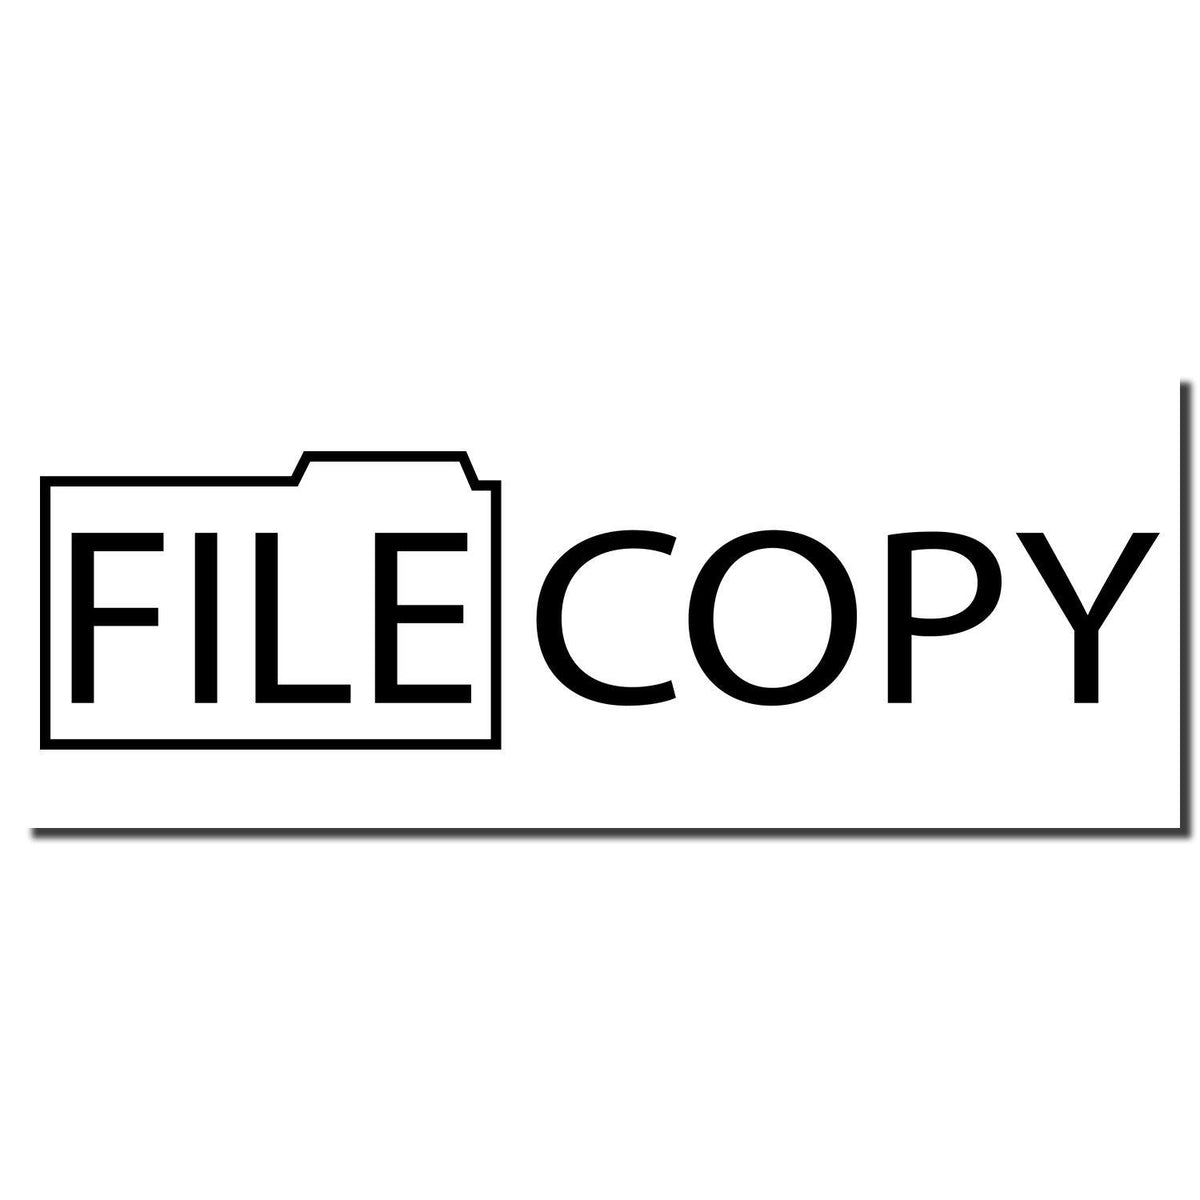 Enlarged Imprint Large File Copy with Folder Rubber Stamp Sample